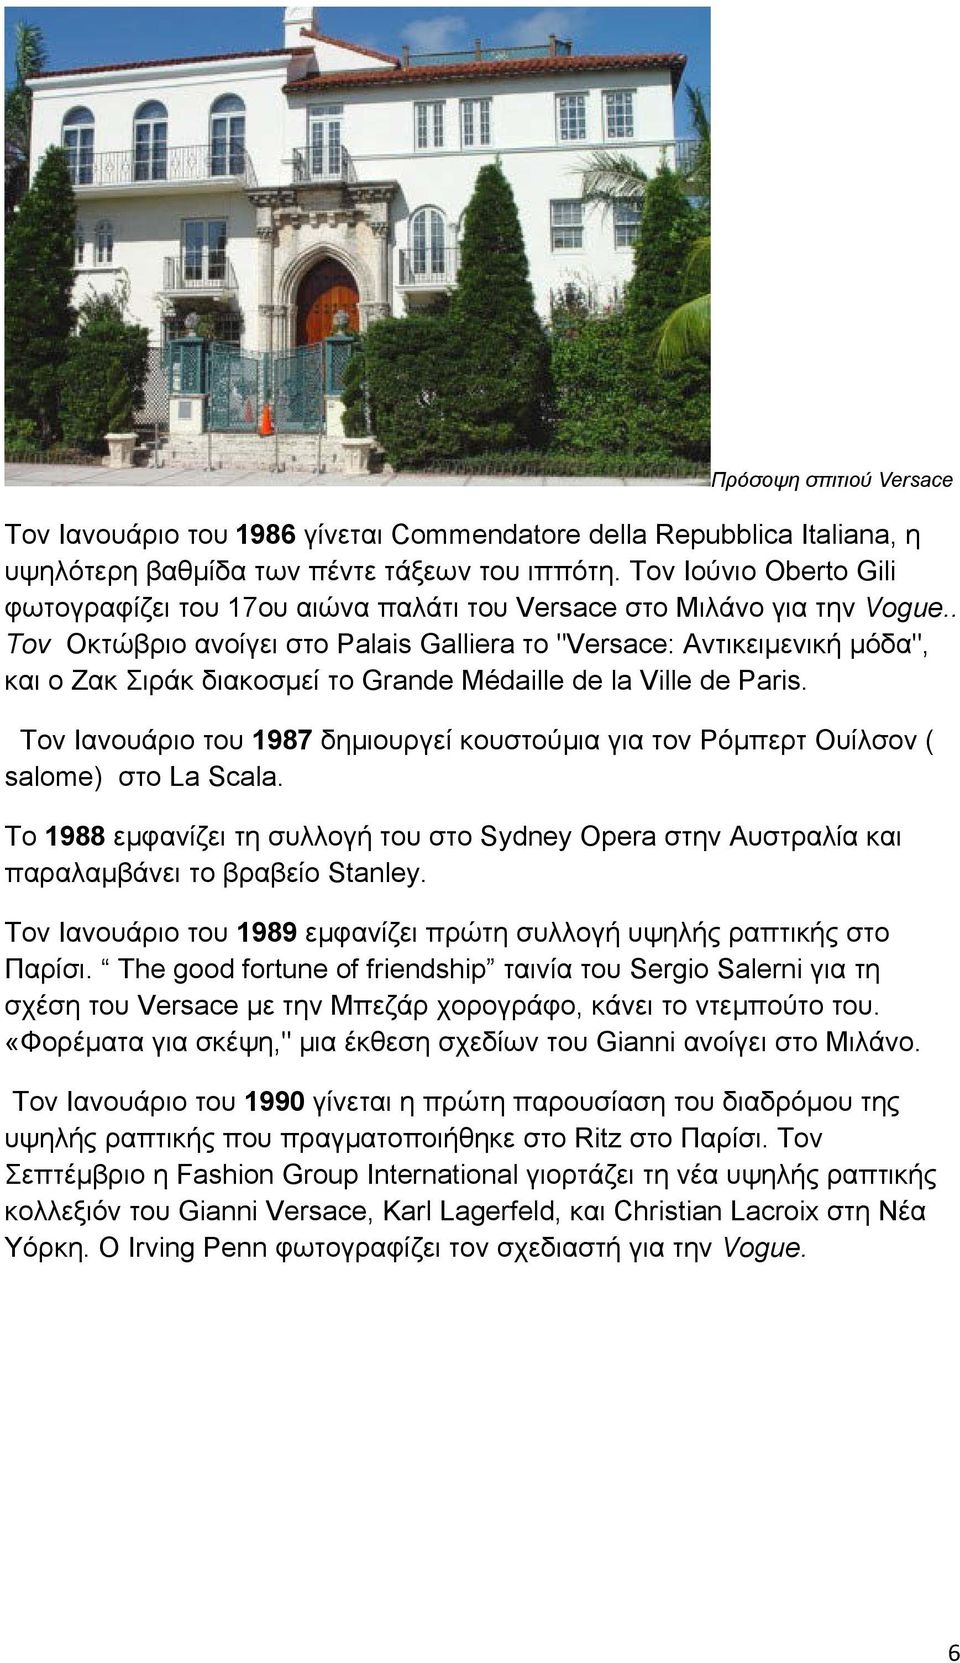 . Τον Οκτώβριο ανοίγει στο Palais Galliera το "Versace: Αντικειμενική μόδα", και ο Ζακ Σιράκ διακοσμεί το Grande Médaille de la Ville de Paris.